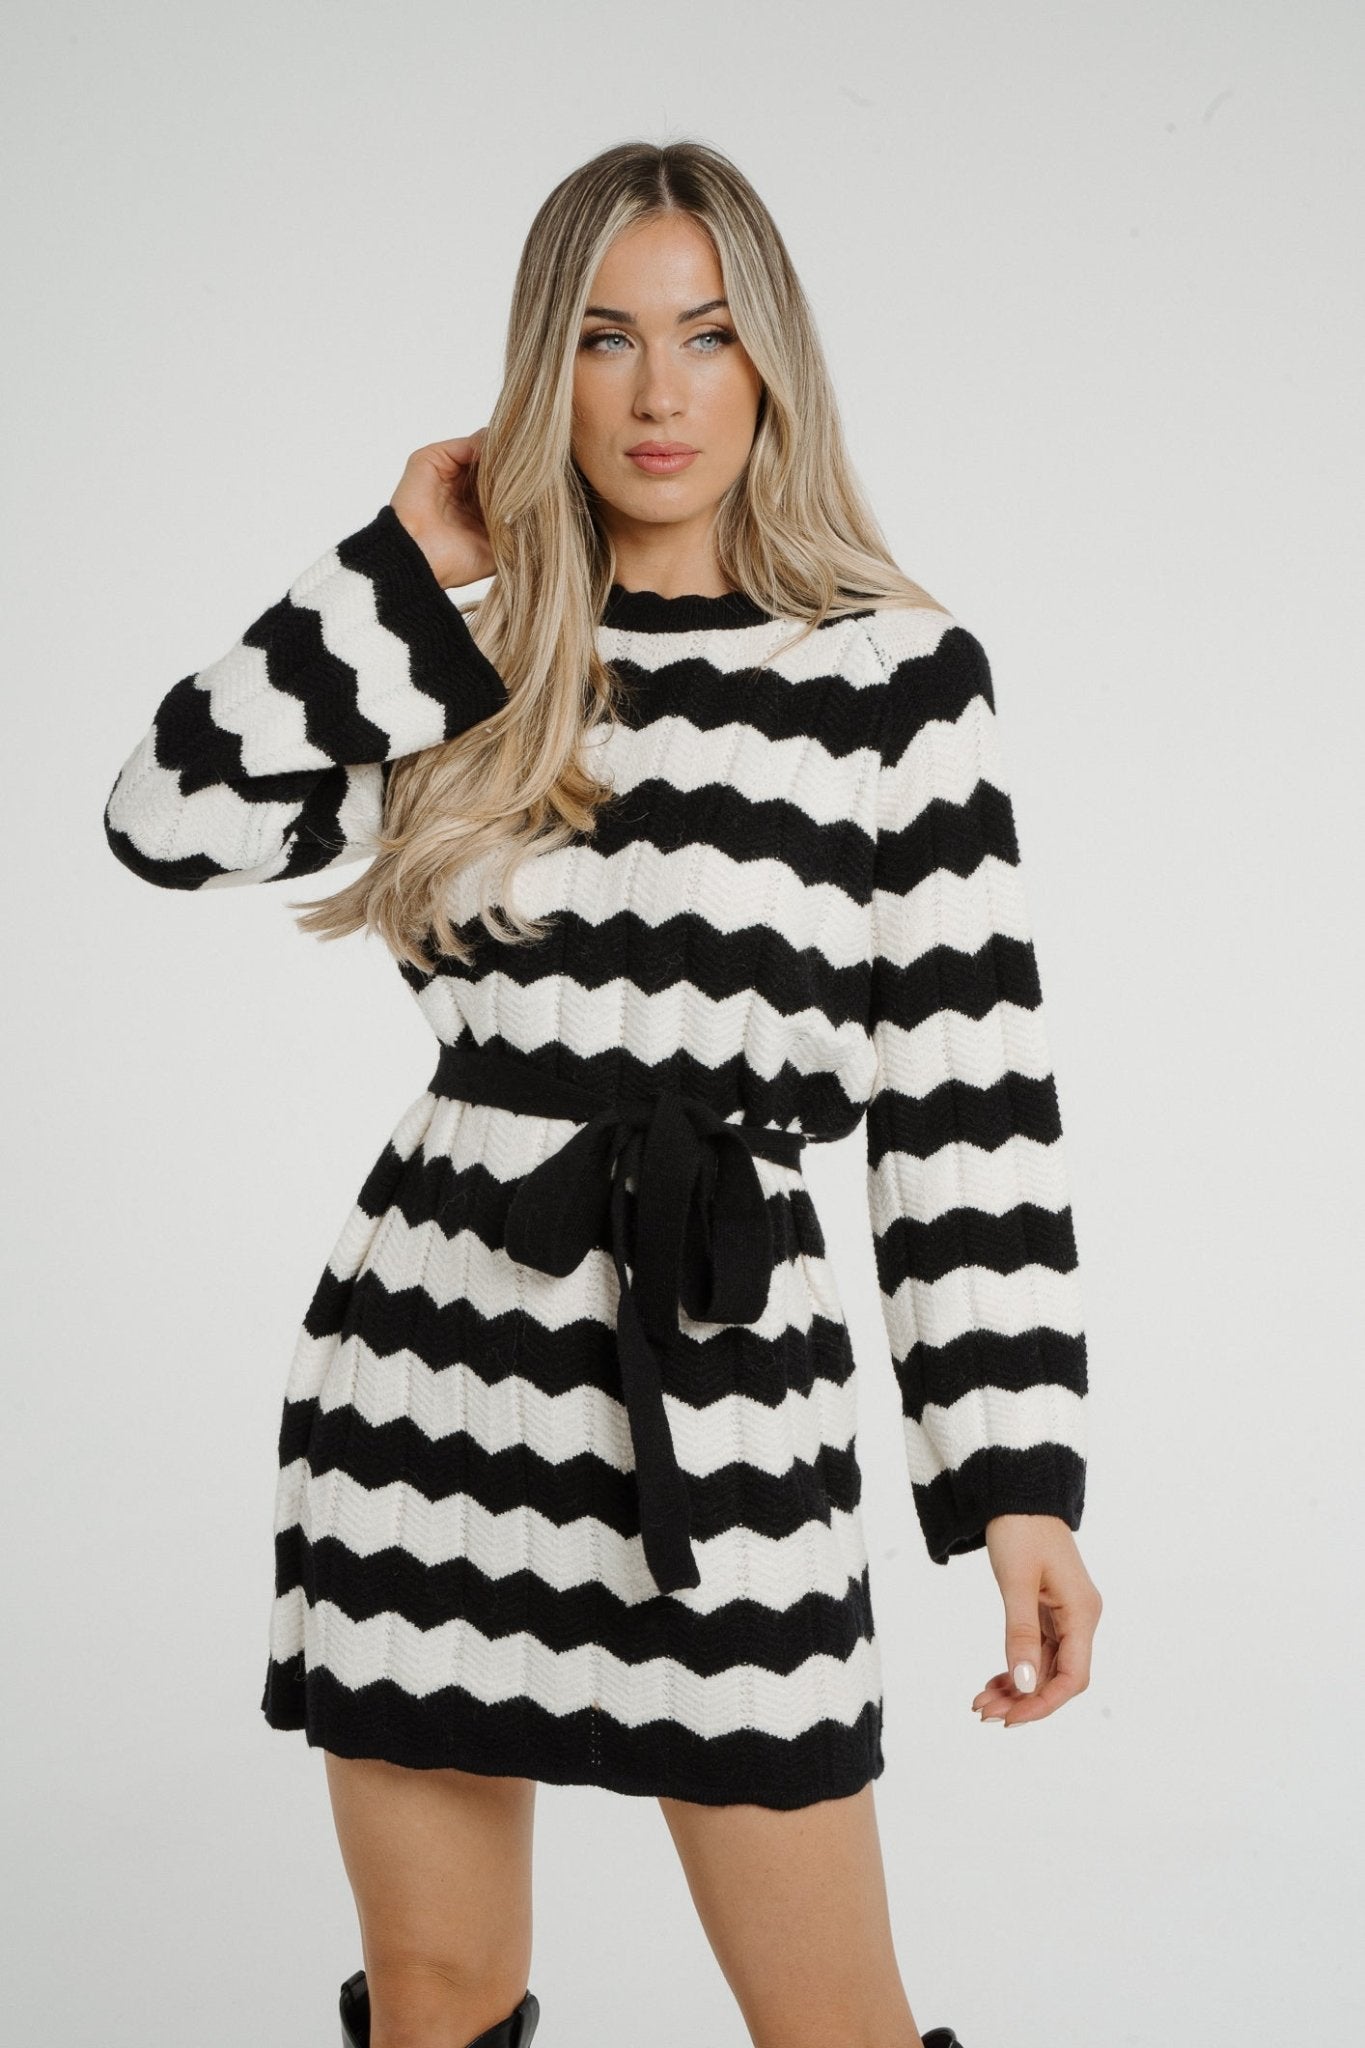 Kendra Stripe Knit Dress In Monochrome - The Walk in Wardrobe